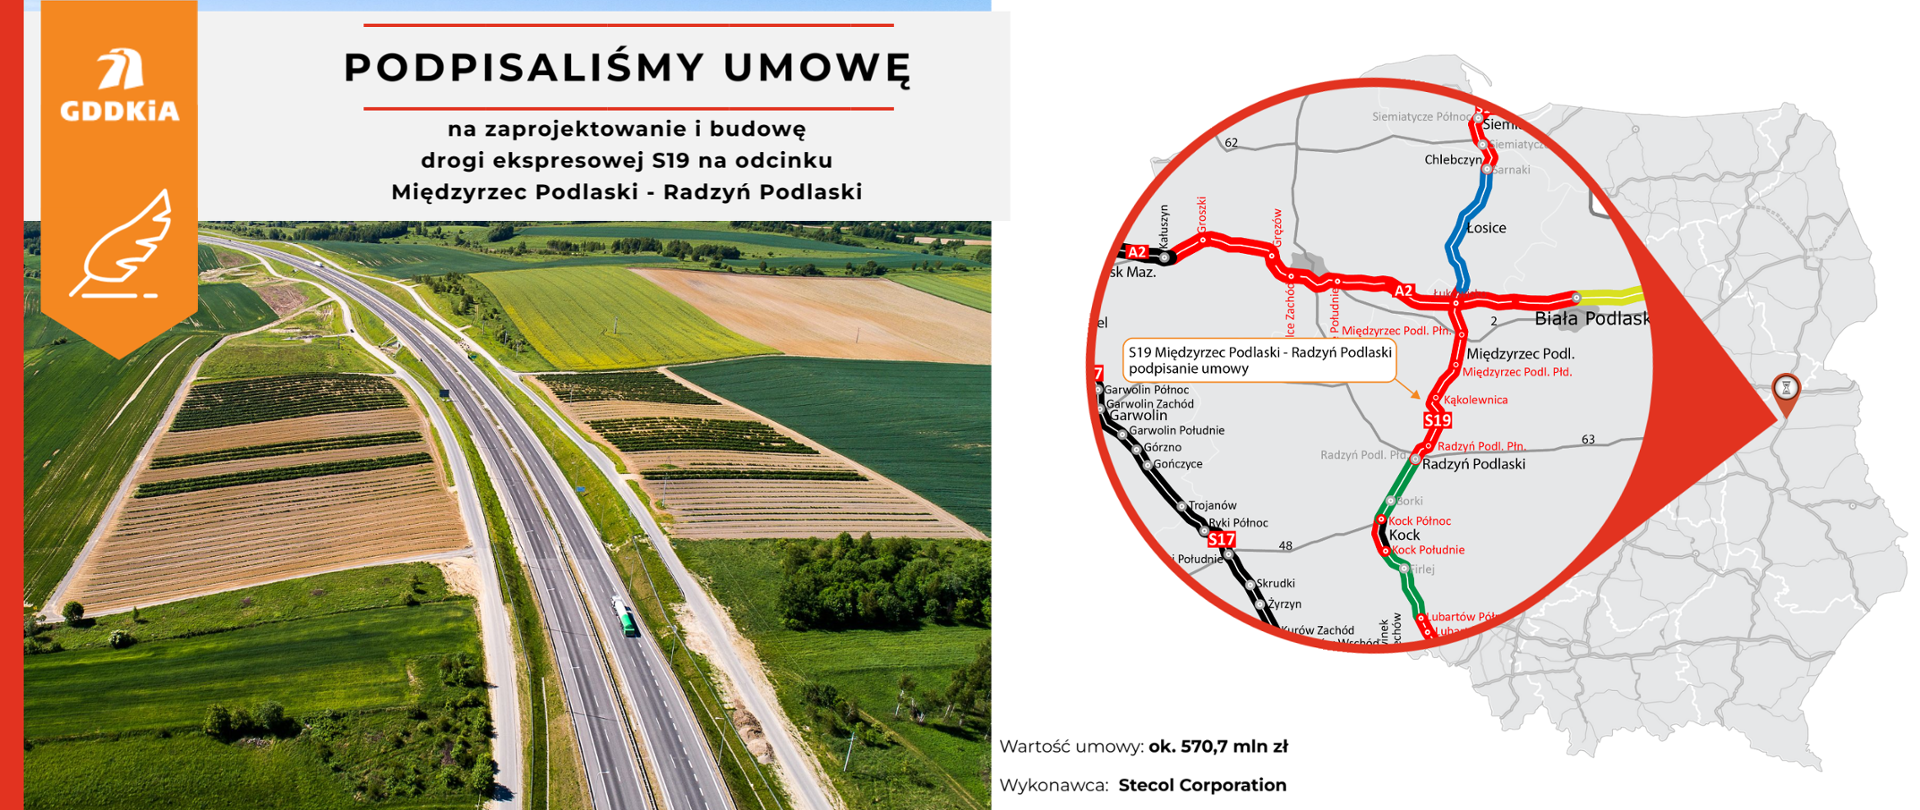 Mapa informująca o podpisaniu umowy na zaprojektowanie i budowę drogi ekspresowej S19 na odcinku Międzyrzec Podlaski - Radzyń Podlaski